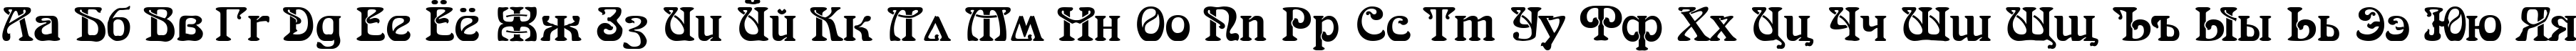 Пример написания русского алфавита шрифтом SkazkaForSerge Medium